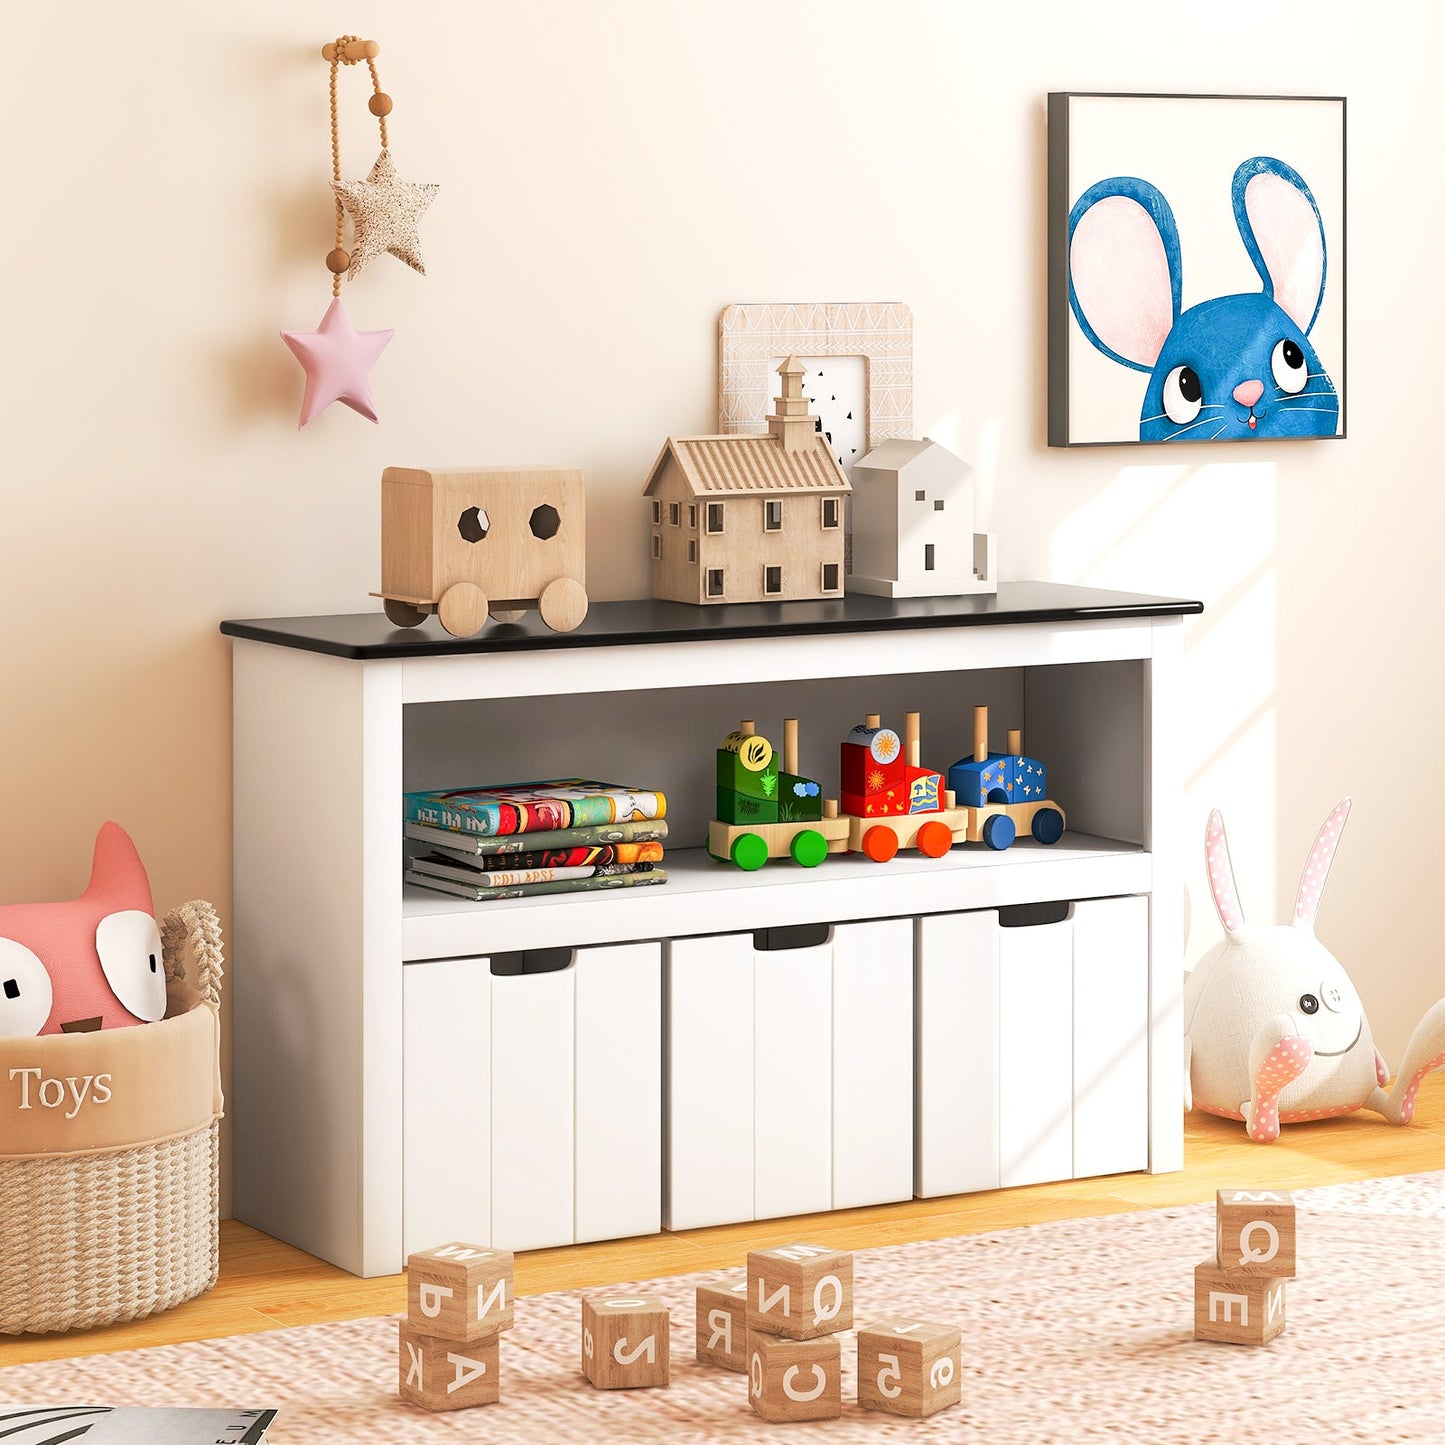 Kids Toy Storage Organizer with 3 Bins and Blackboard Top-102 x 33 x 62cm